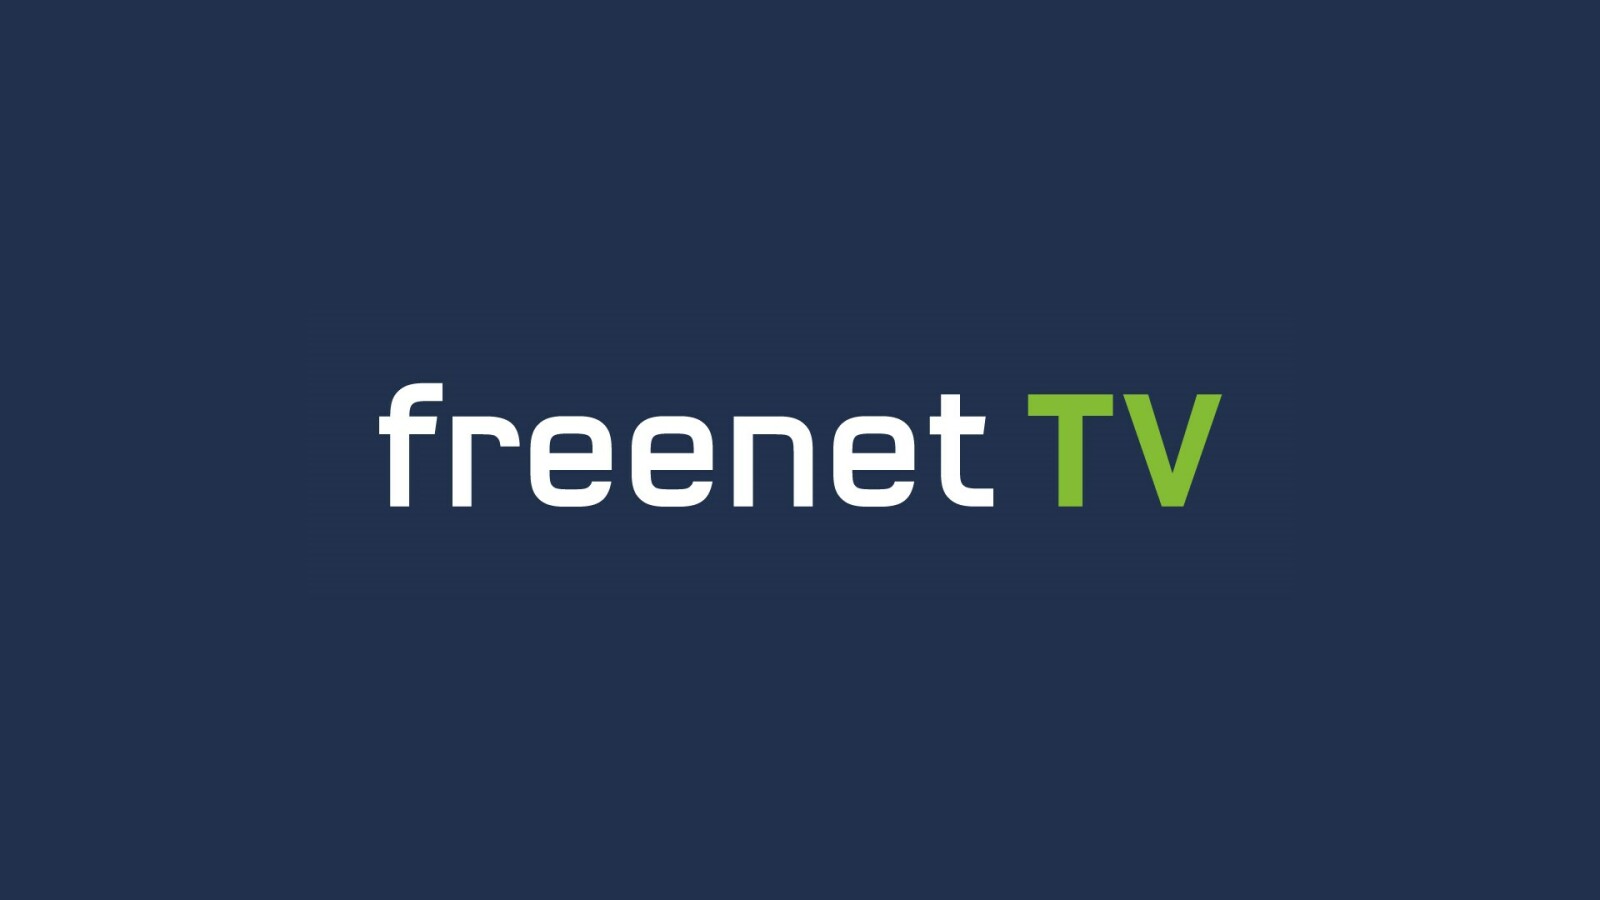 Wie Funktioniert Freenet Tv